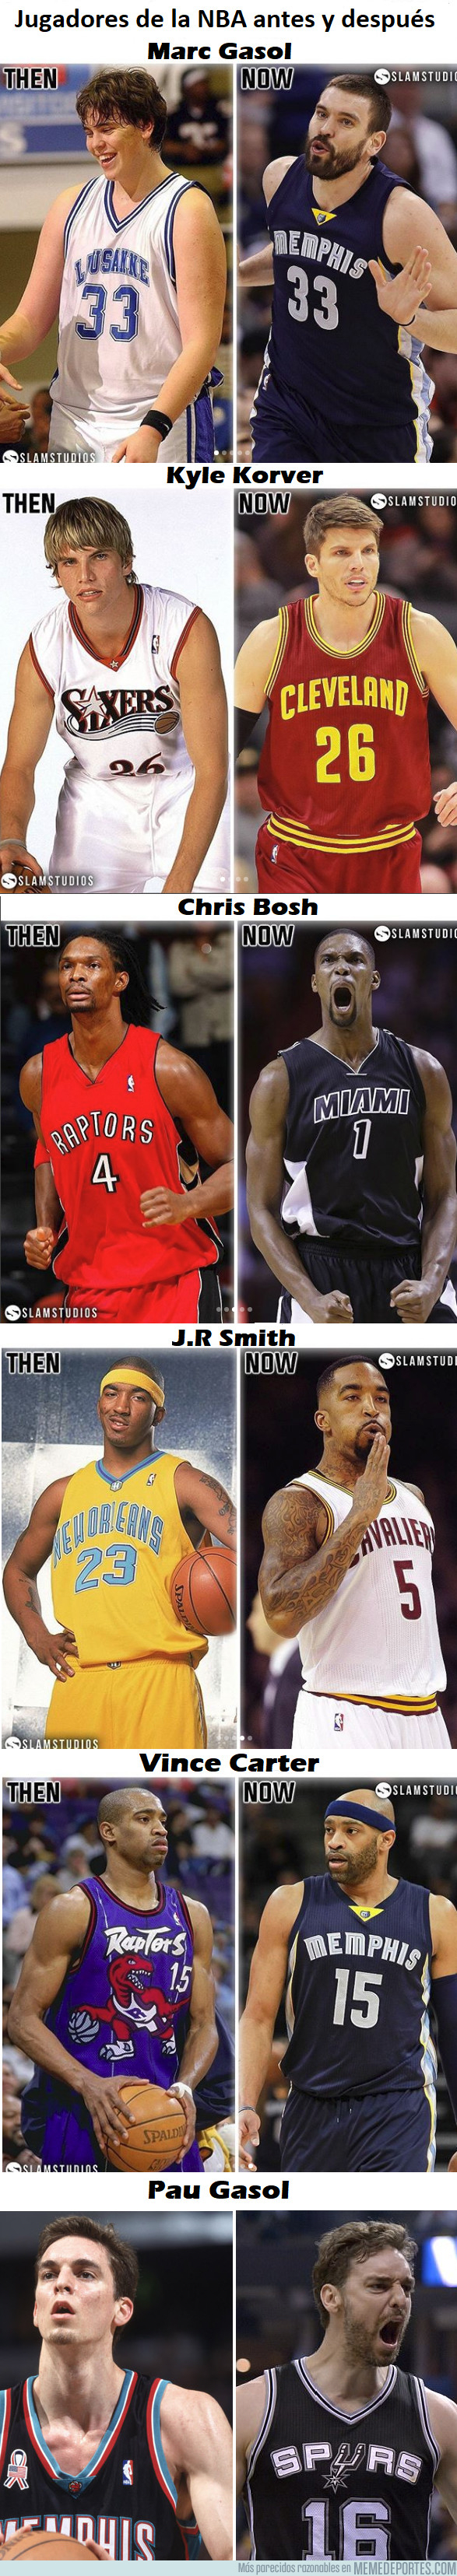 997840 - El antes y después de estos jugadorazos de la NBA